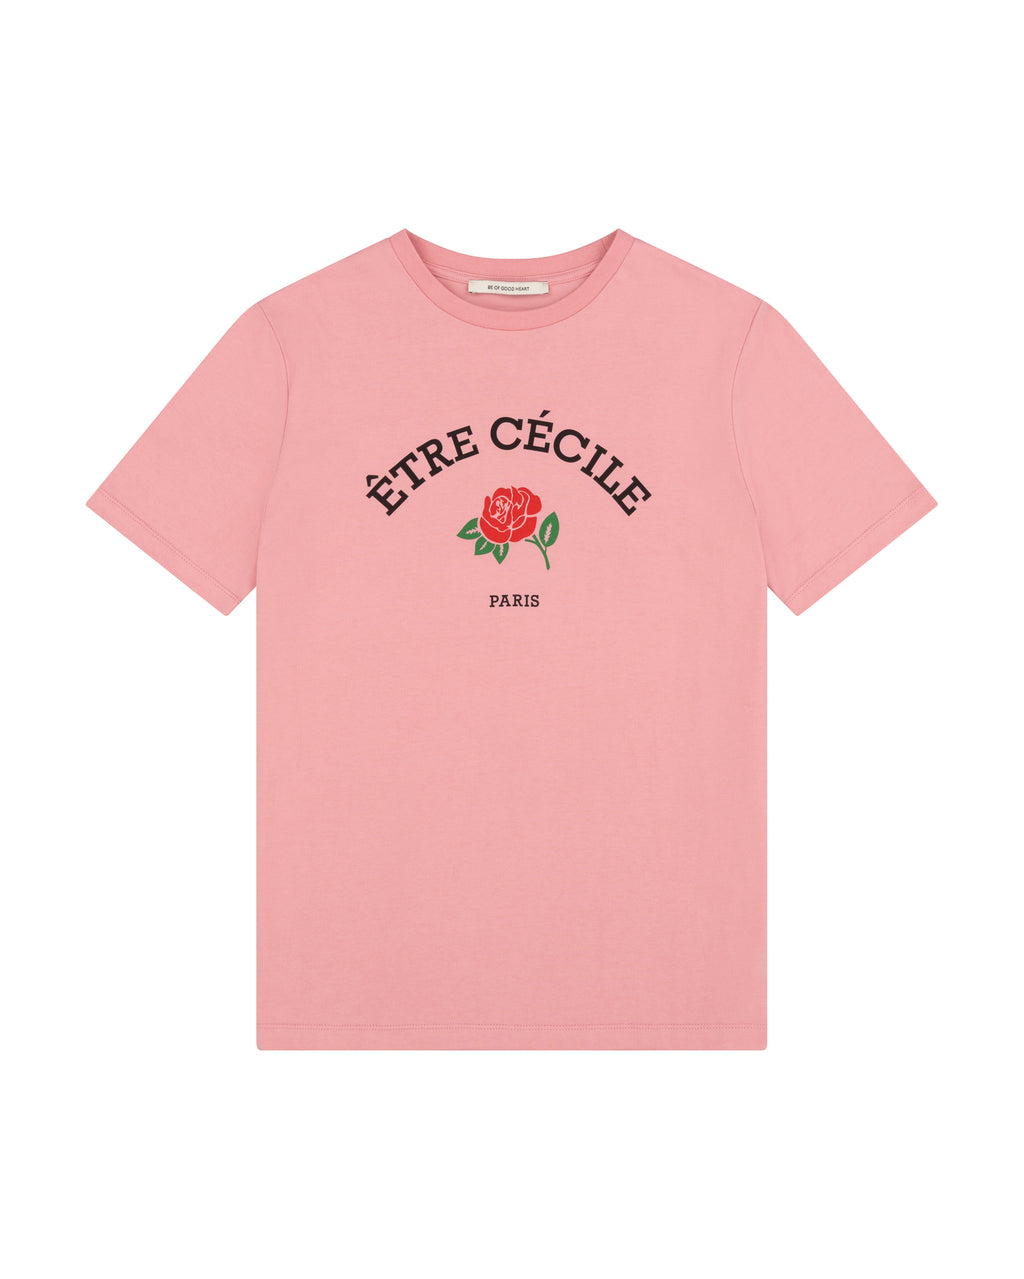 Etre Cecile Rose Classic T-Shirt Être - Cécile